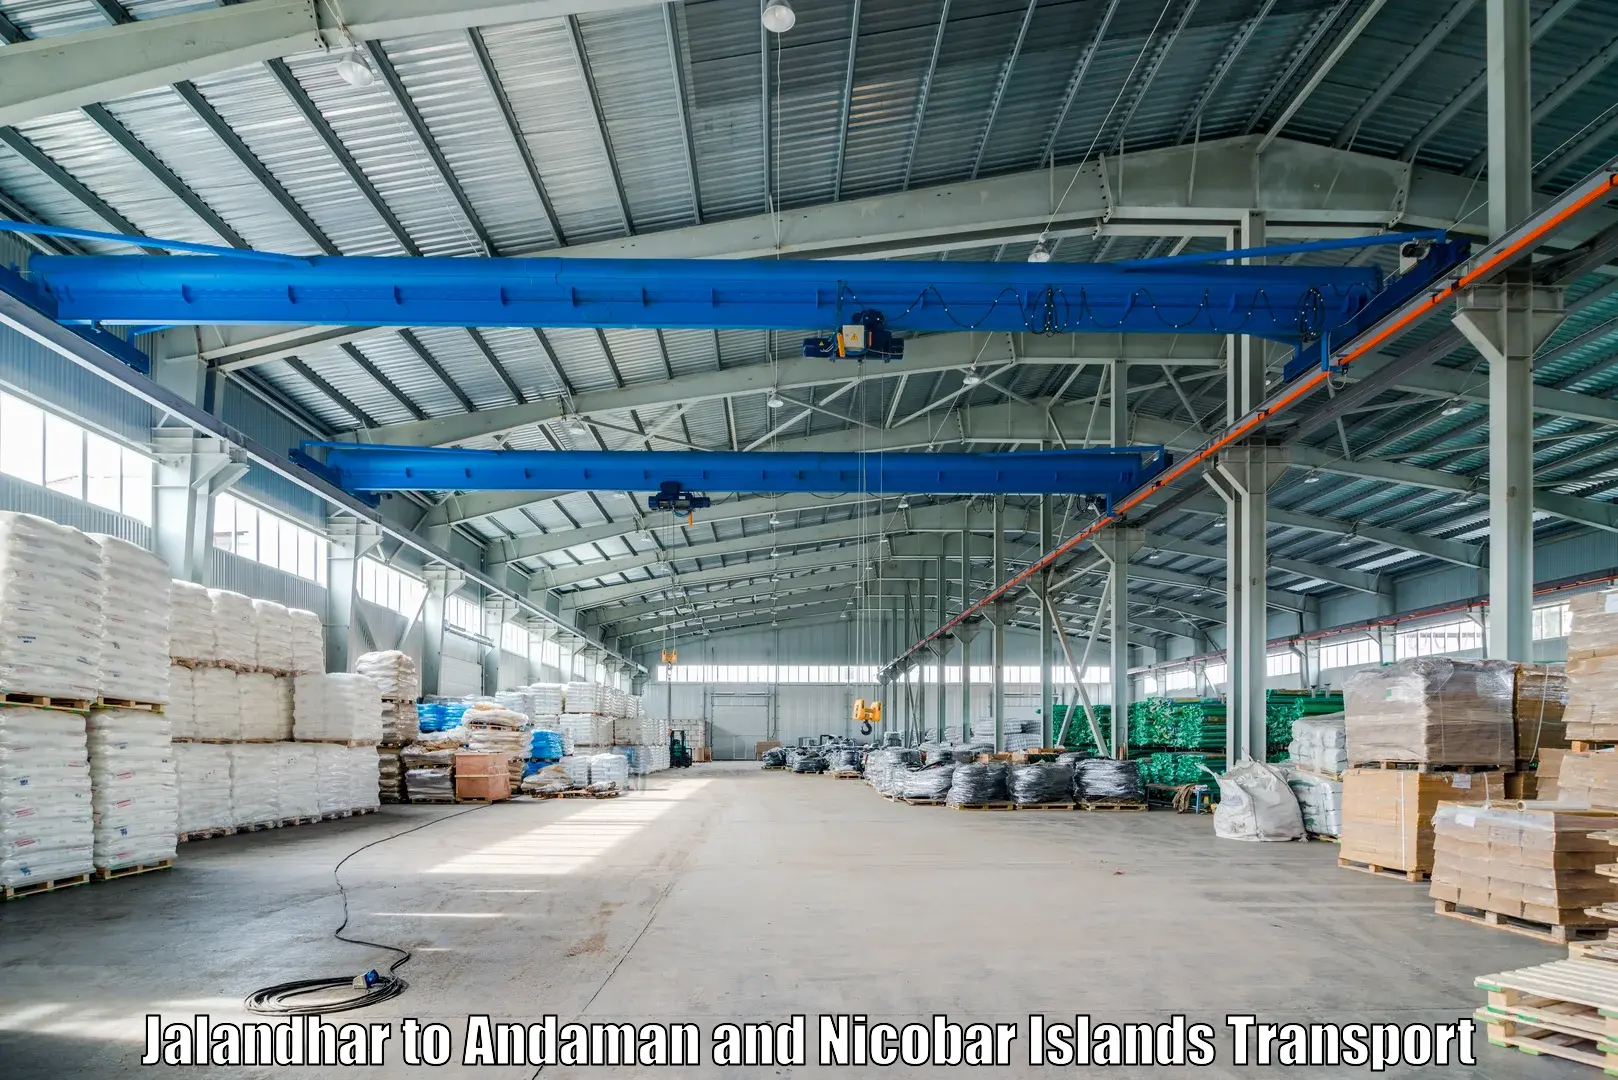 Air freight transport services Jalandhar to Andaman and Nicobar Islands